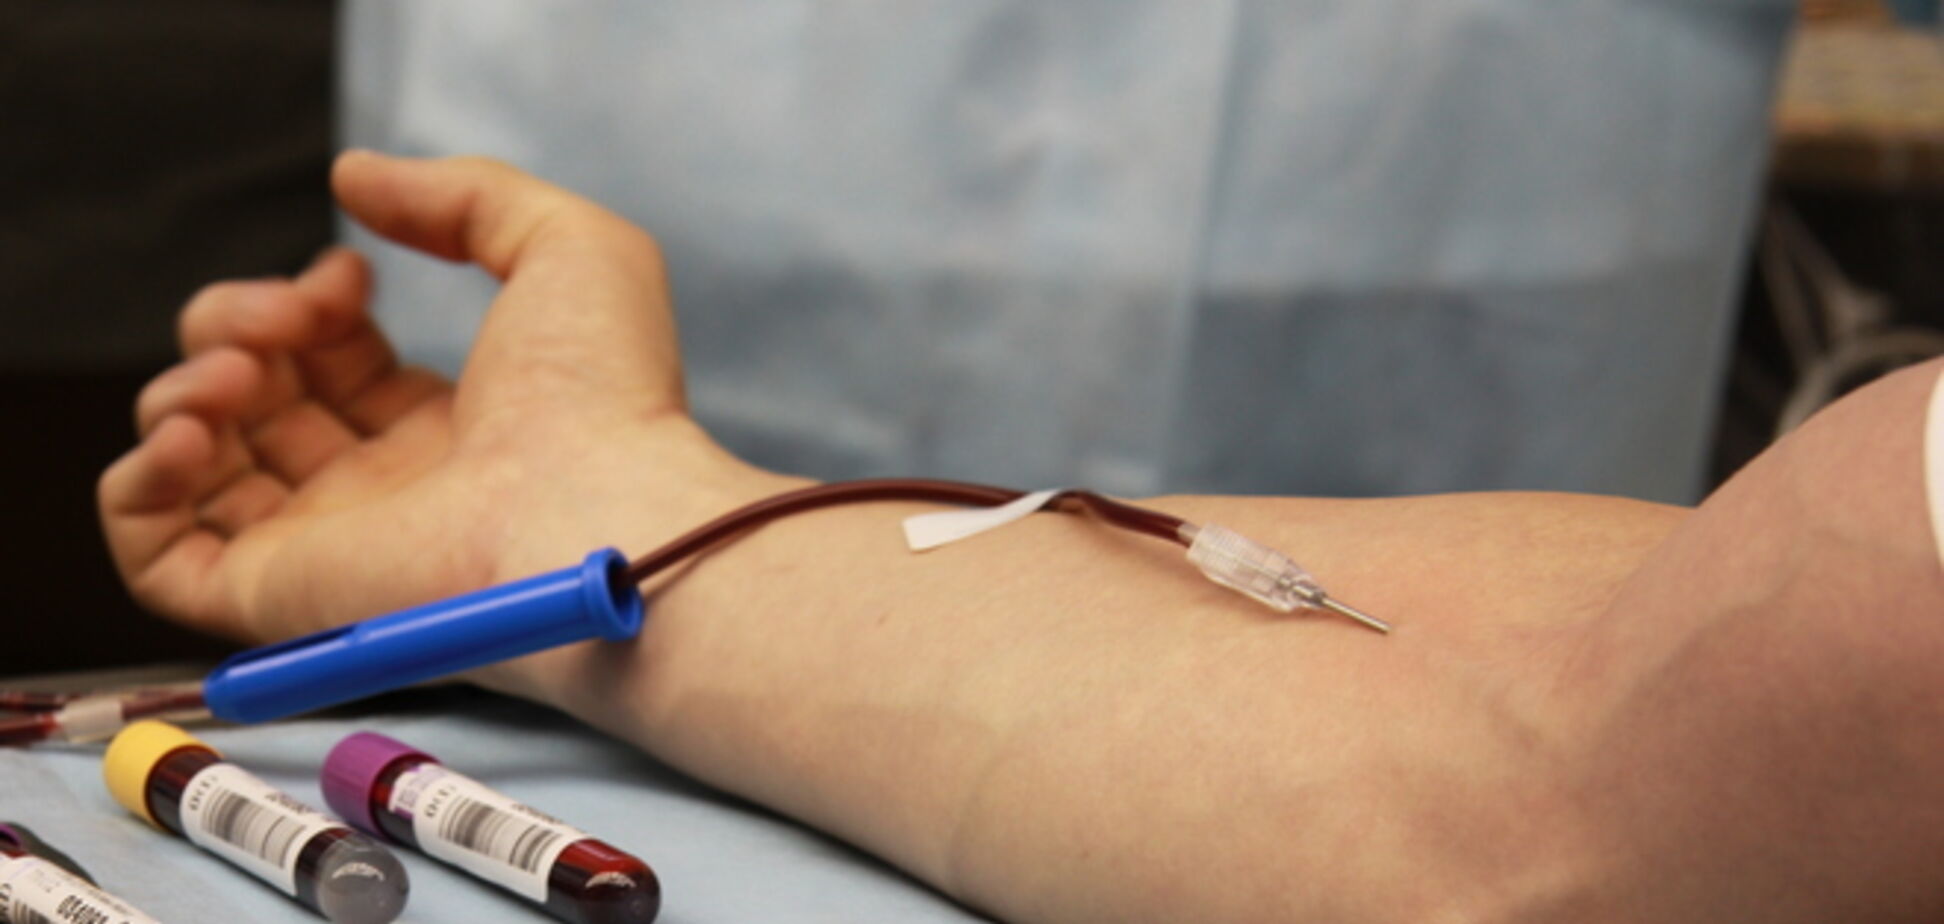 Бойцам АТО могут переливать кровь со смертельными болезнями: сенсационное расследование